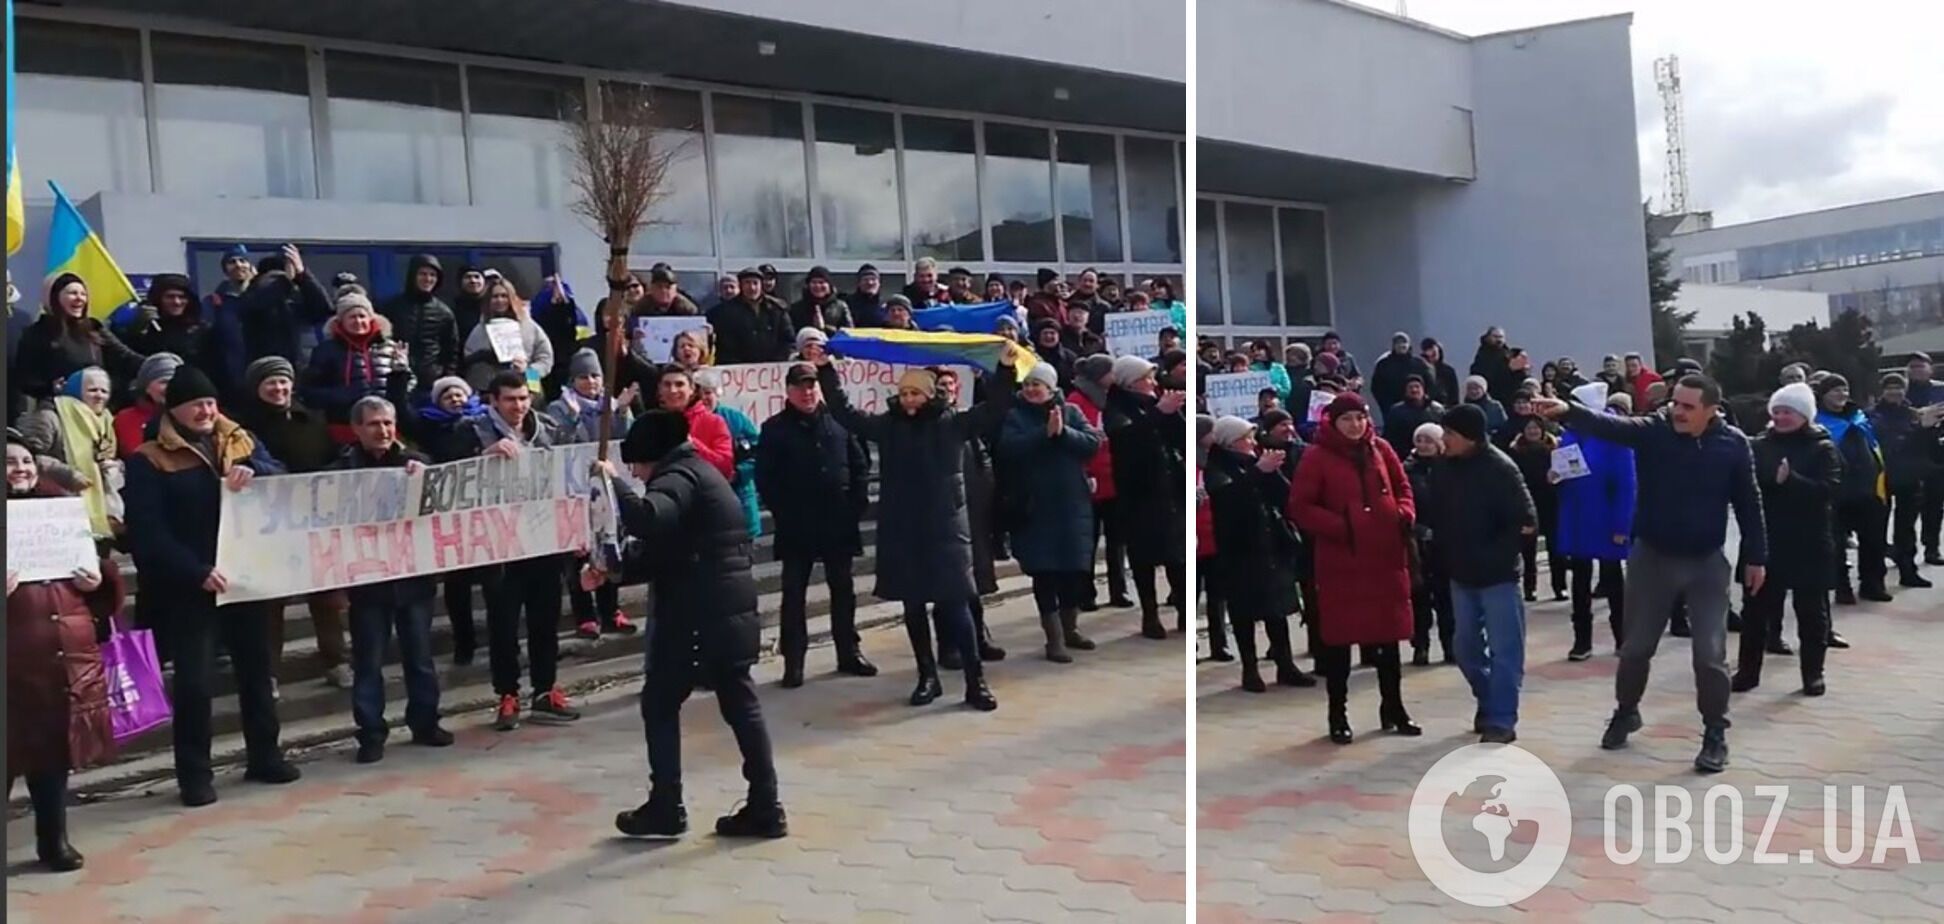 Митинг против российской оккупации в Новой Каховке